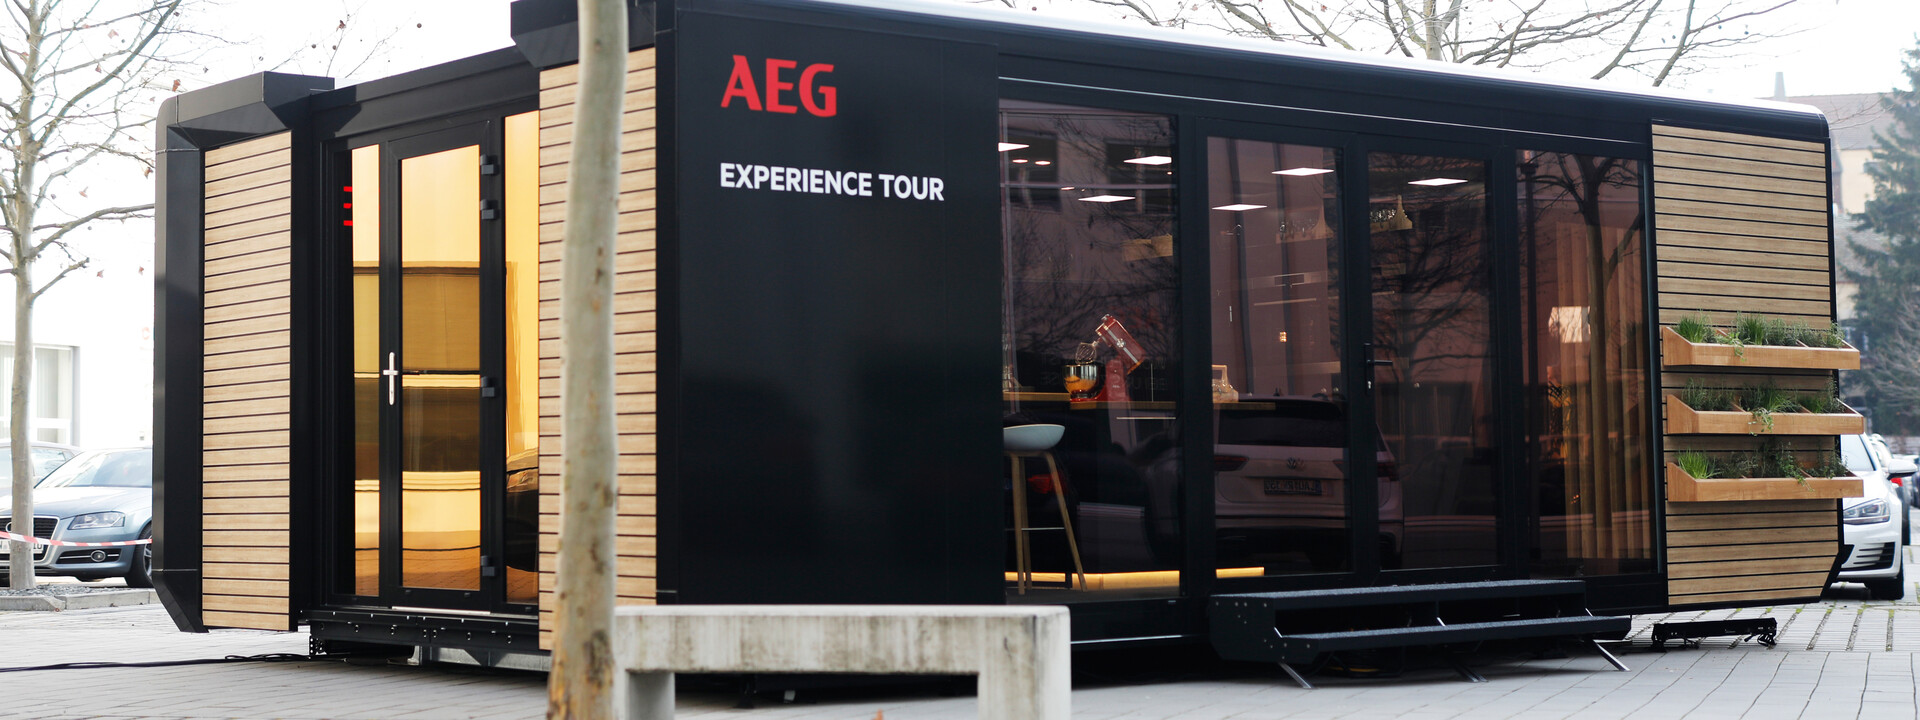 AEG Experience Tour